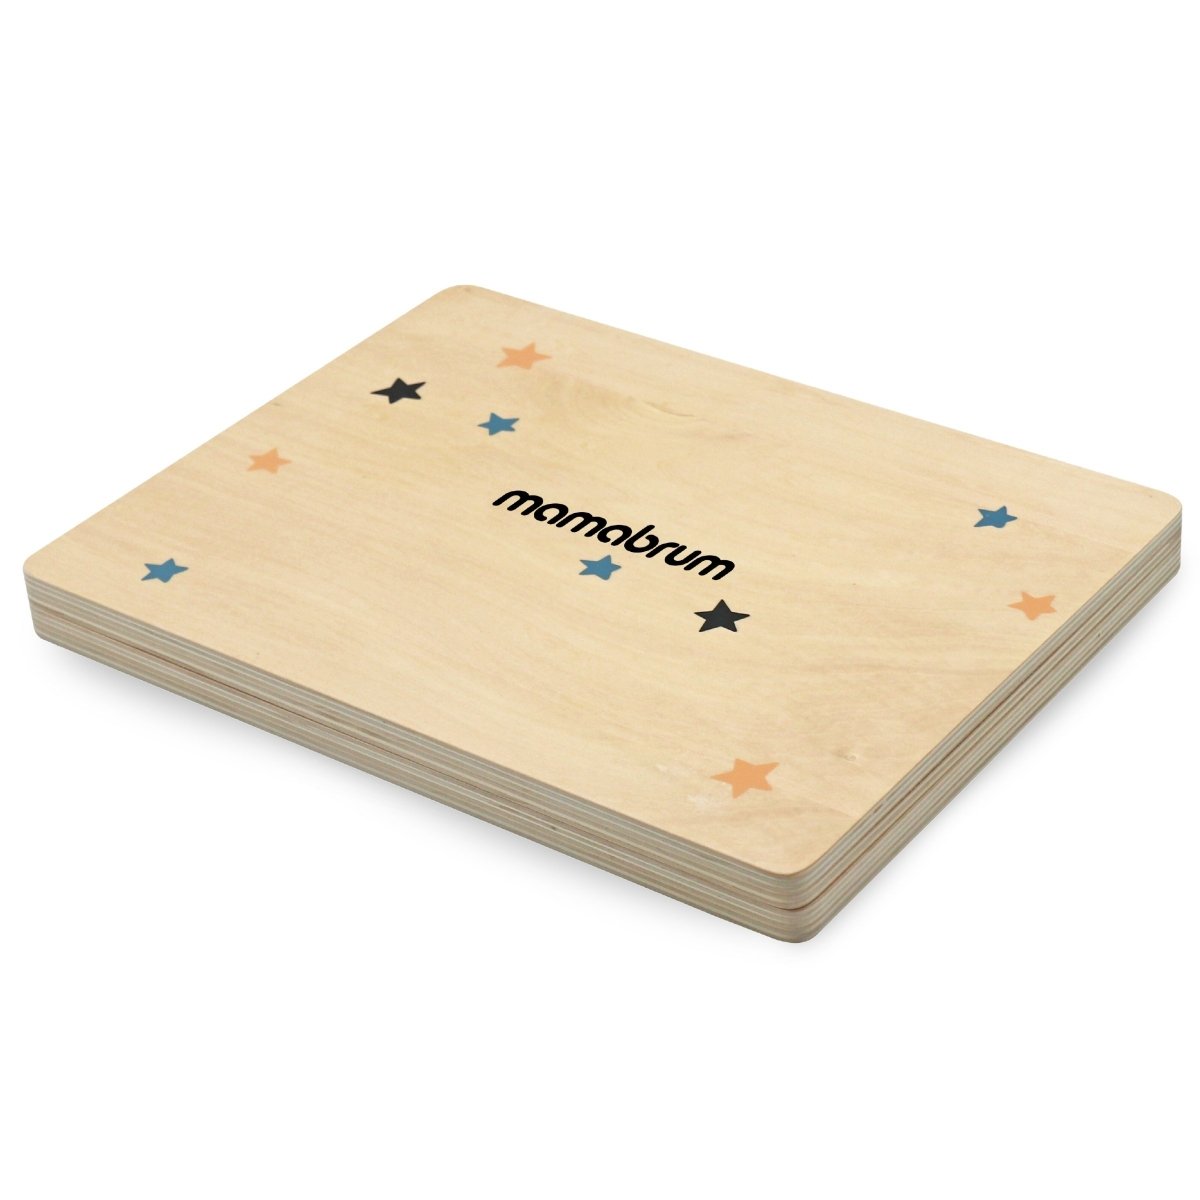 Drewniany laptop z myszką - tablica magnetyczna + kredowa